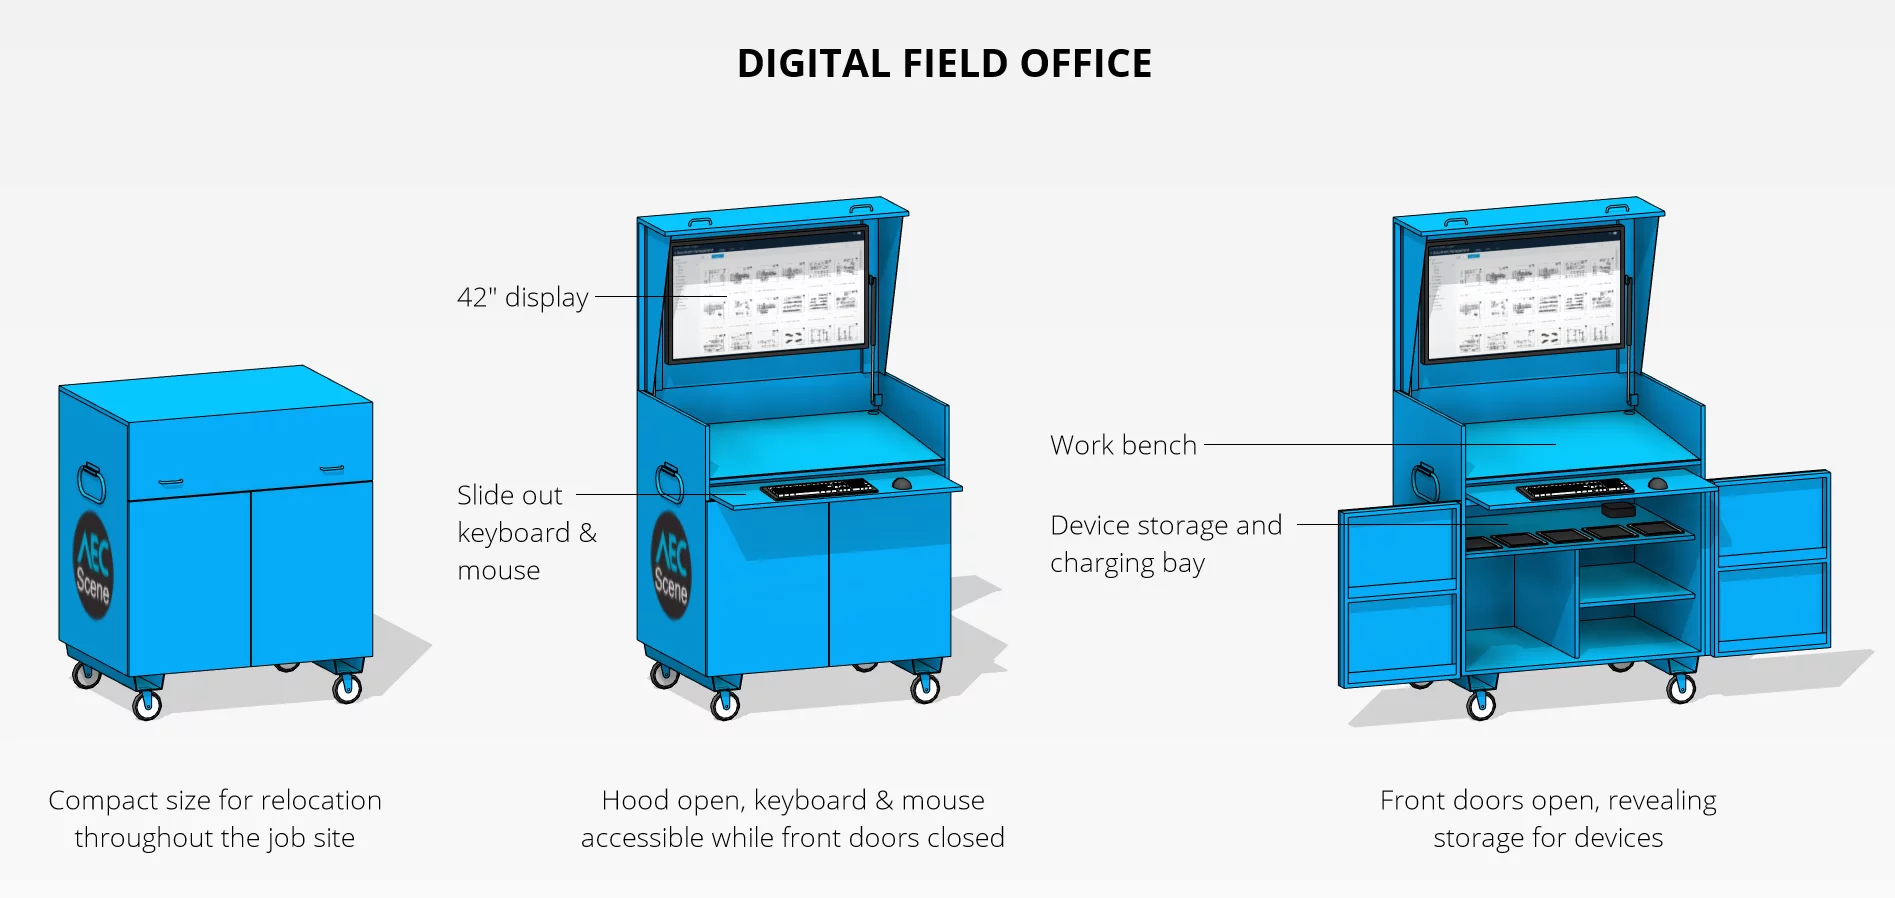 Digital field office